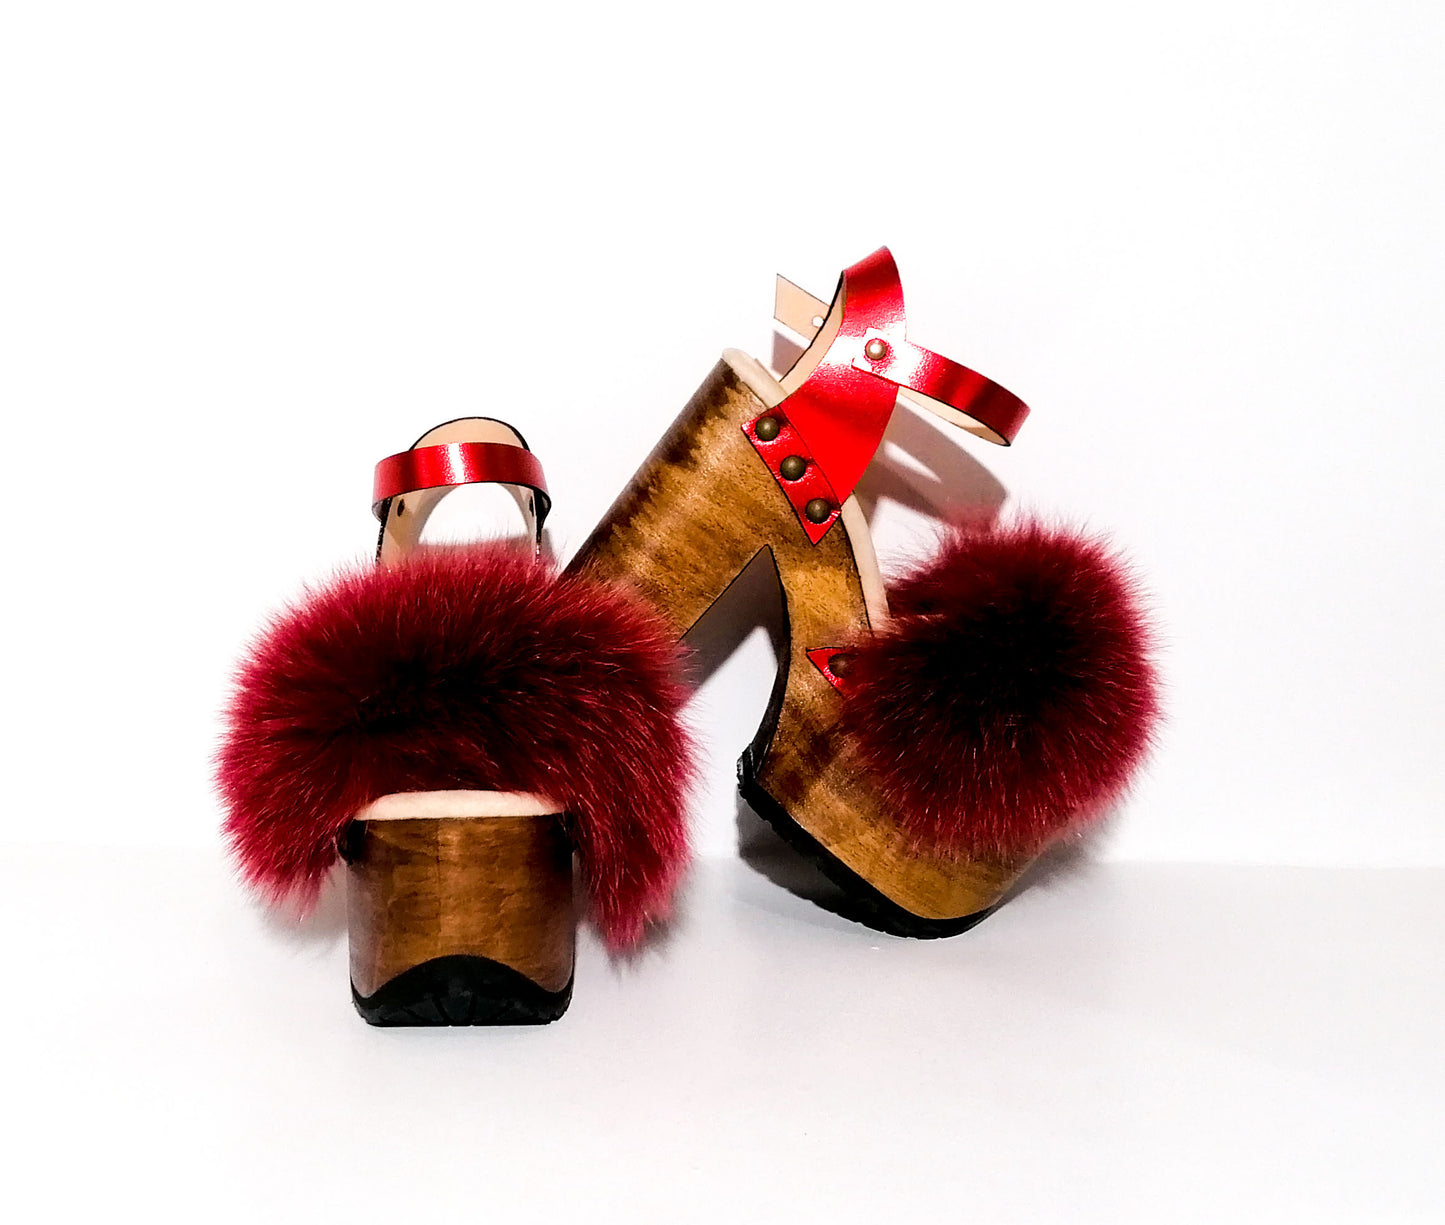 Queen Red Sandals